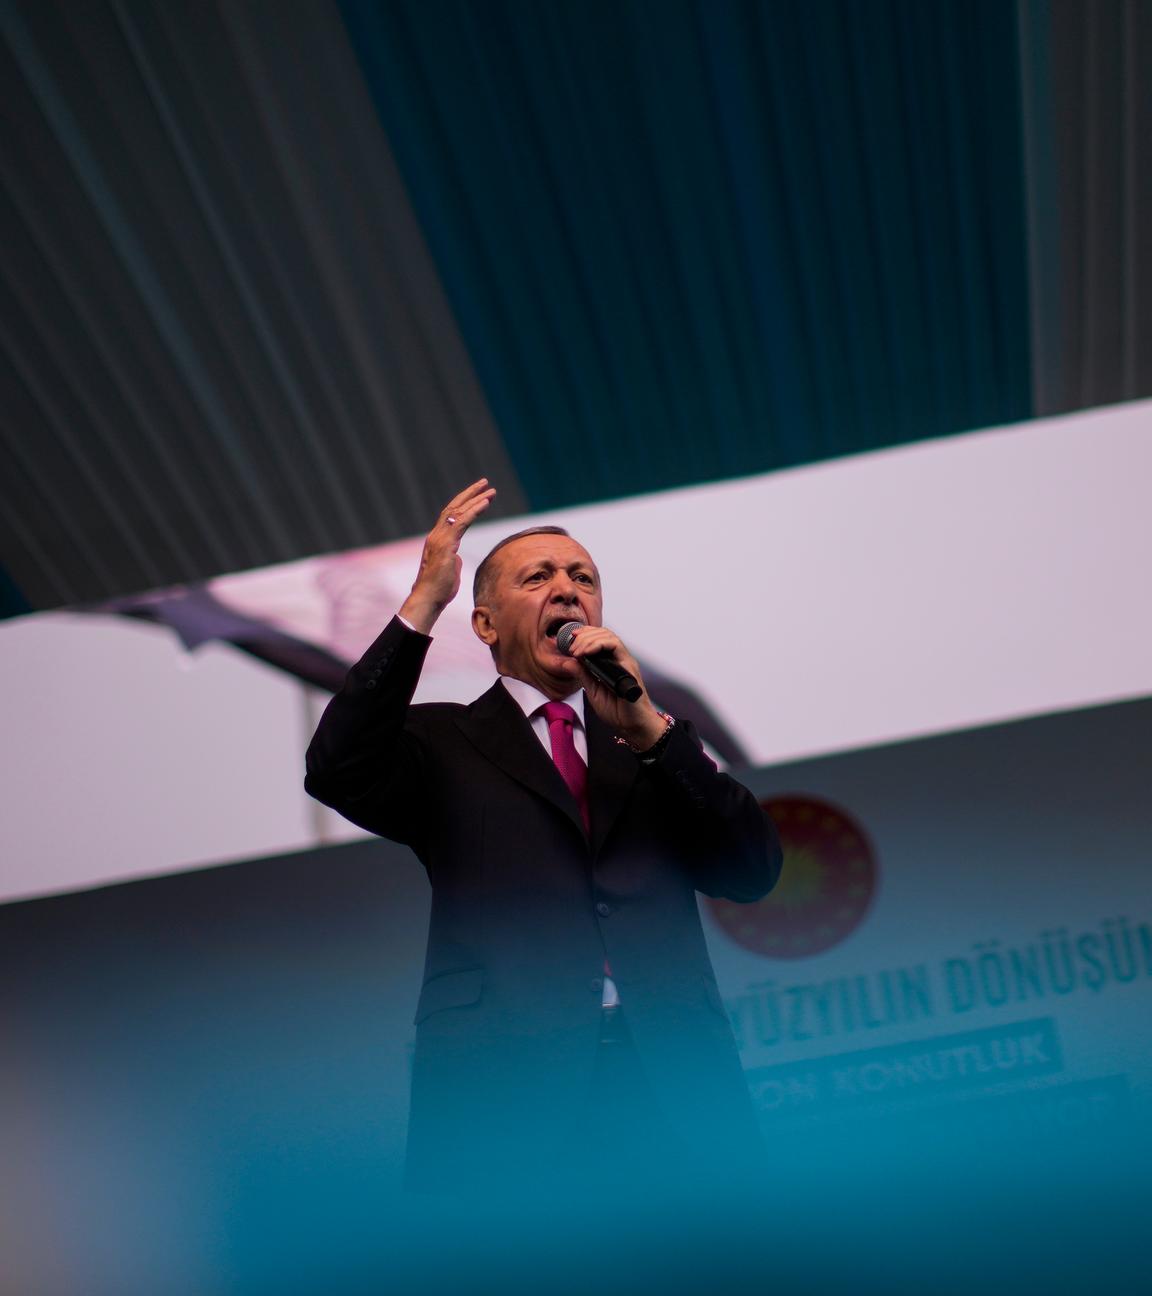 Der türkische Präsident Erdogan hält eine Rede während einer Wahlkampfveranstaltung in Istanbul.